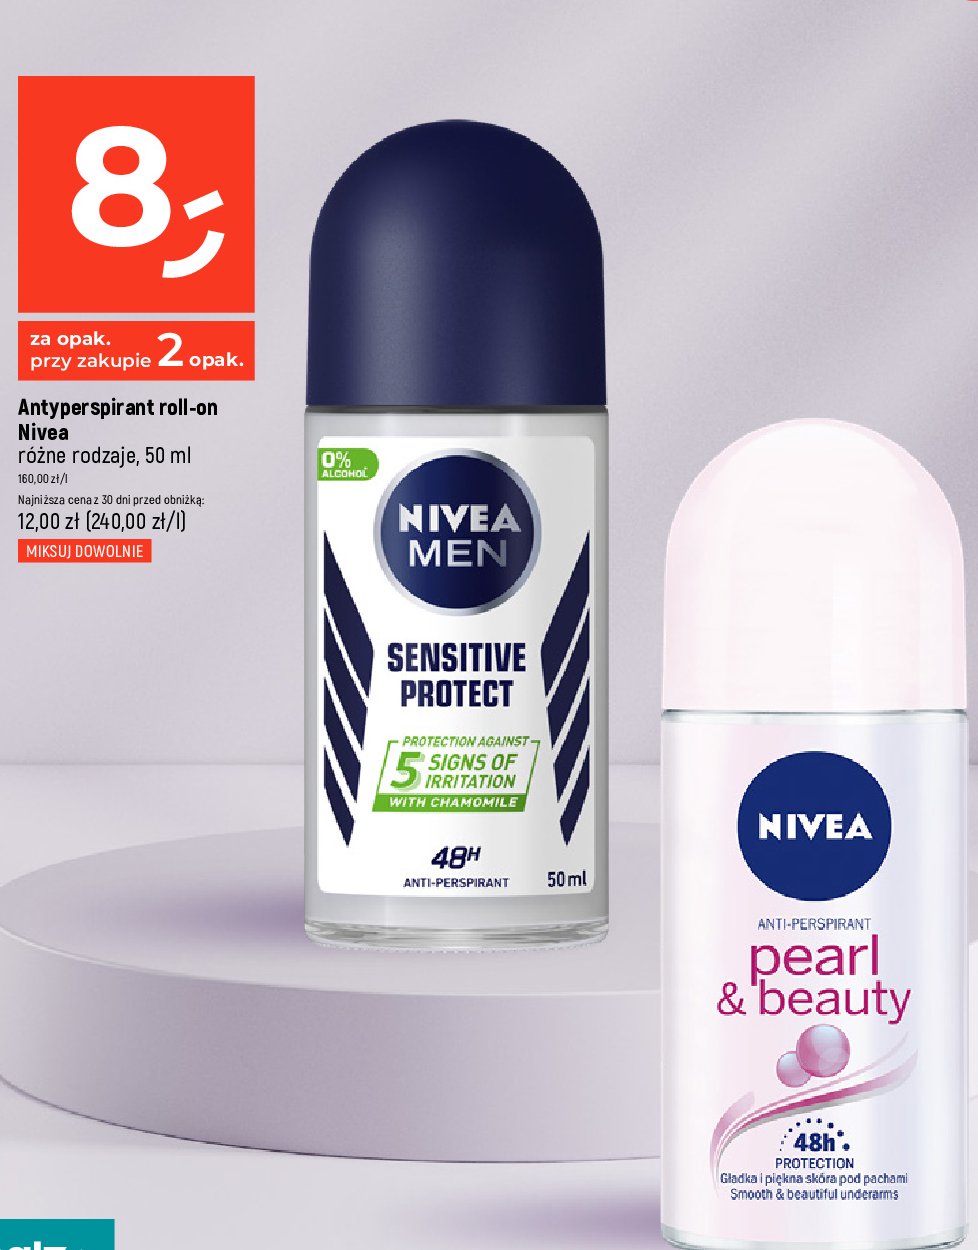 Antyperspirant sensitive protect Nivea men sensitive promocja